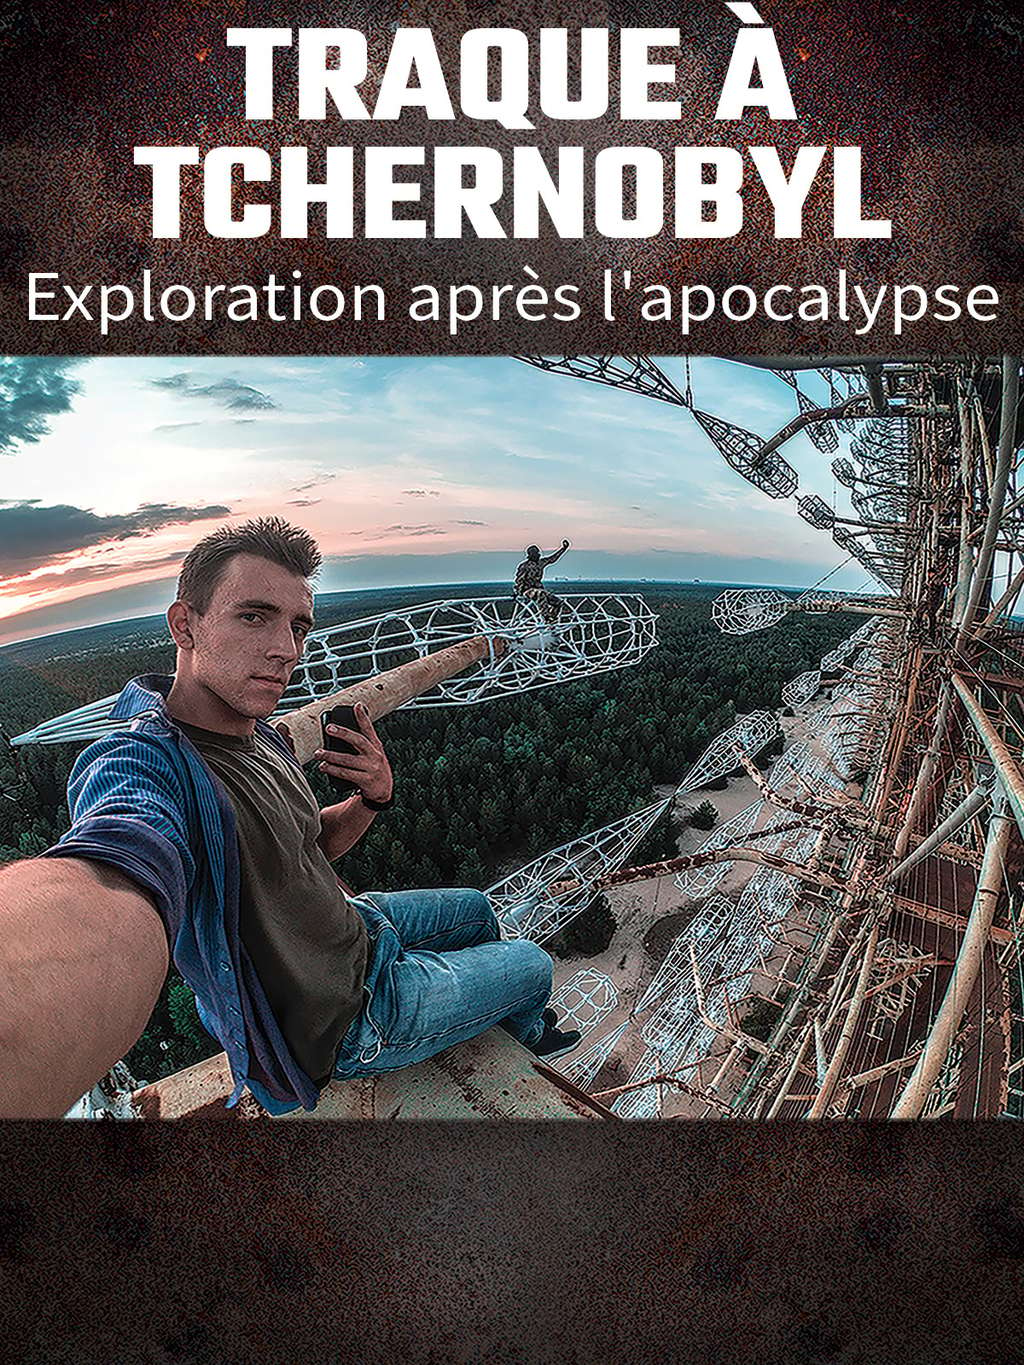 Traque de Tchernobyl : exploration après l'apocalypse © Amazon 